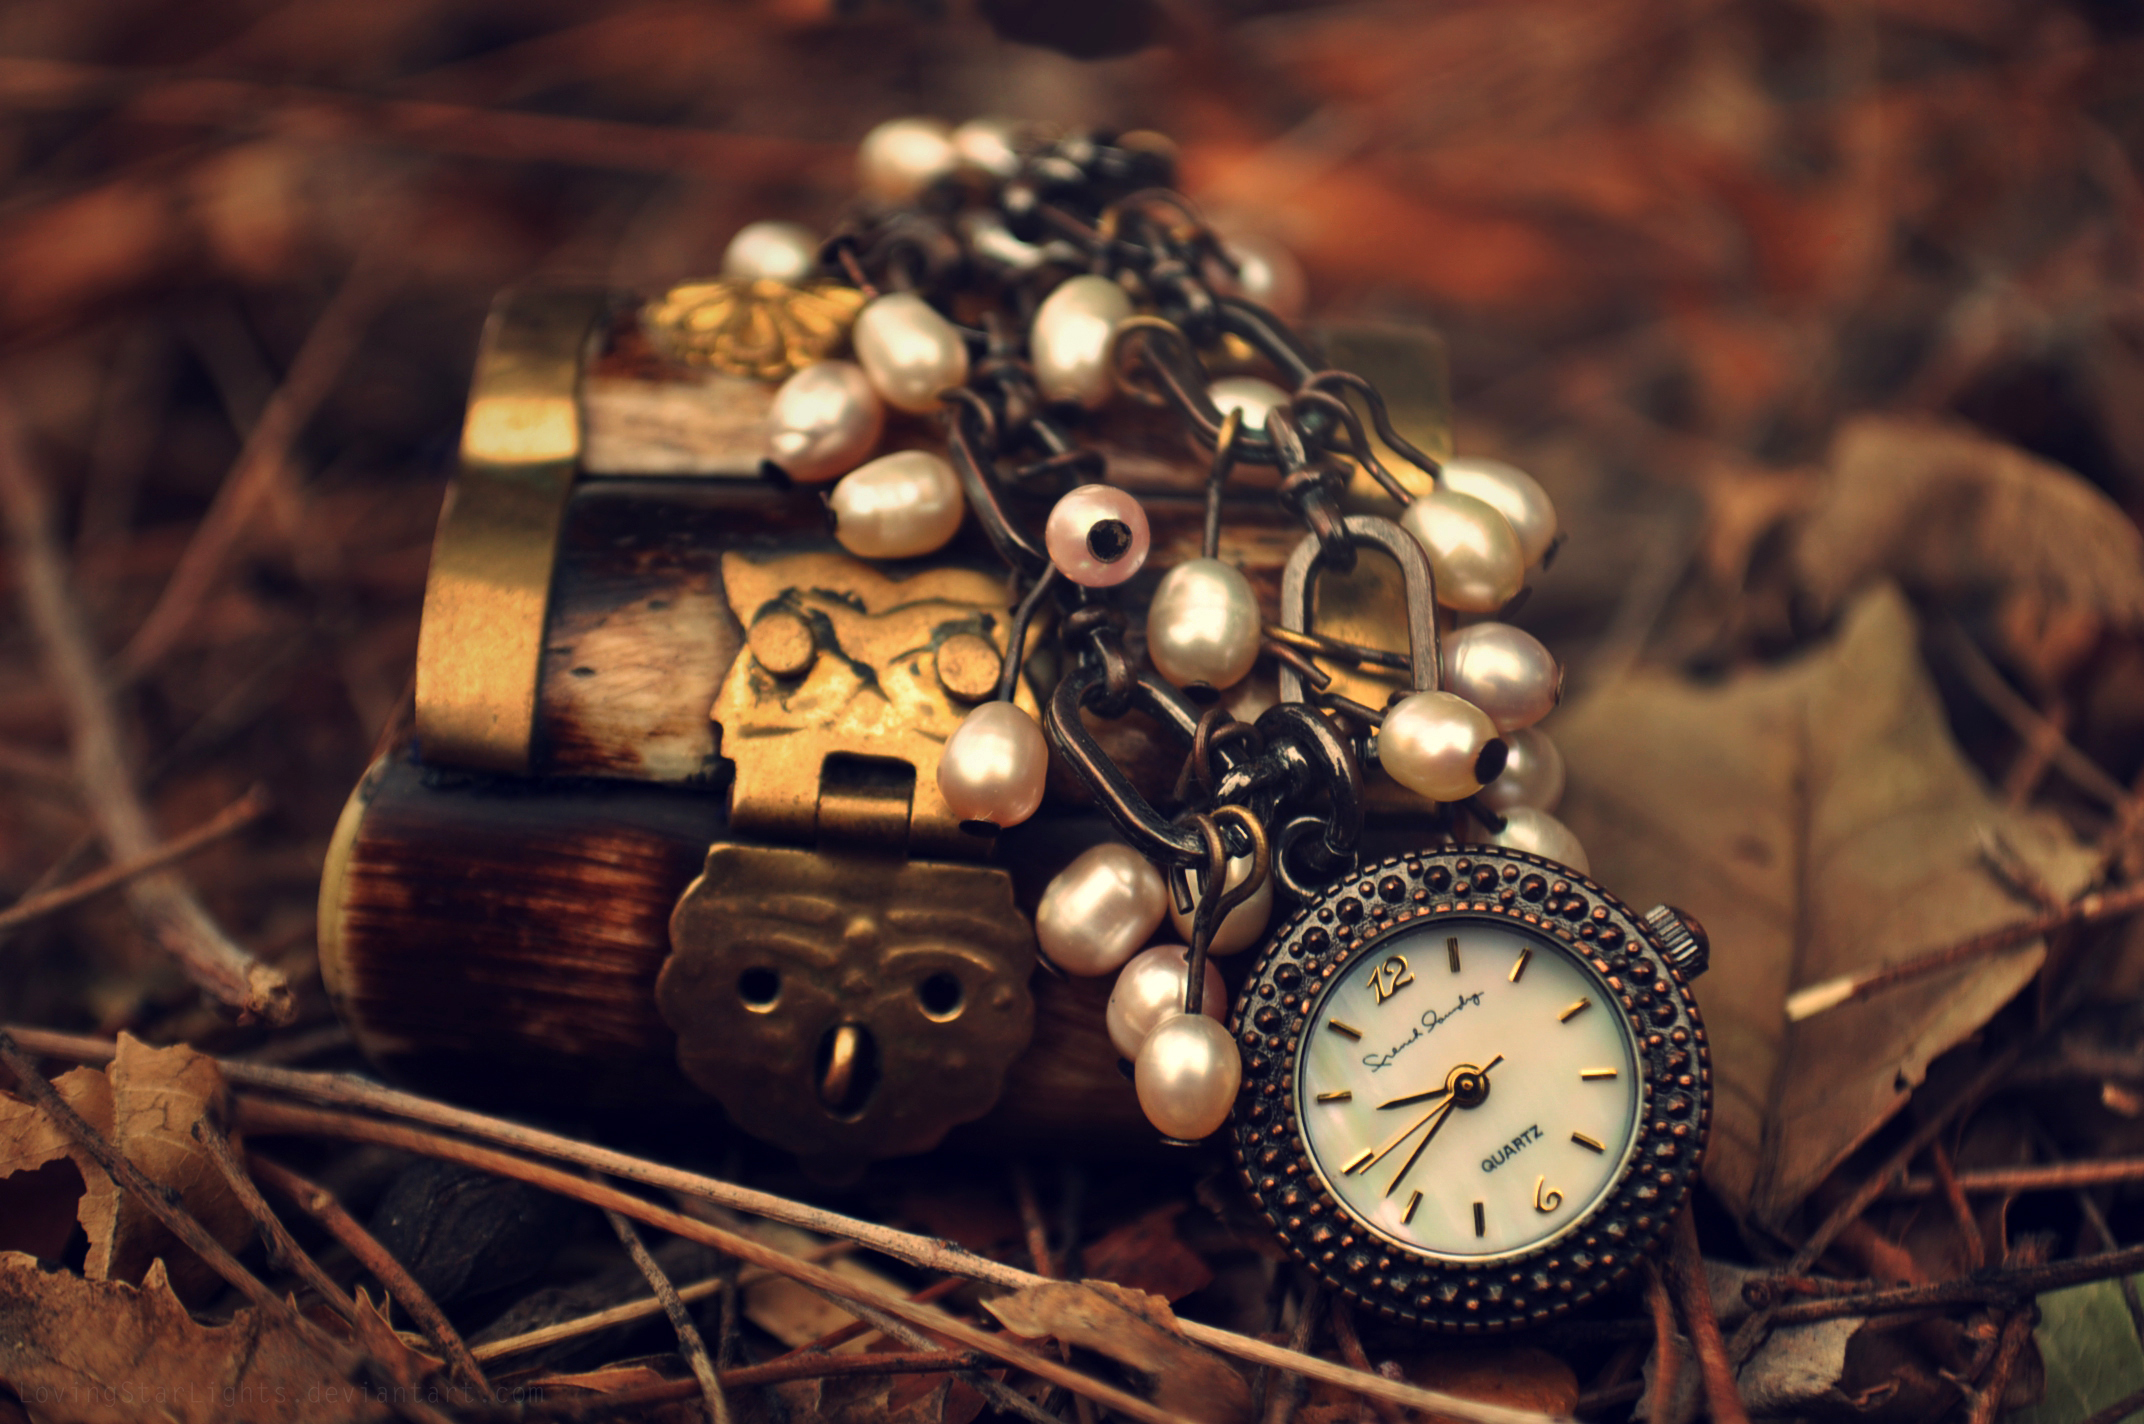 Фото обоев на часы. Обои для часов. Красивые часы. Красивые предметы. Старинные часы.